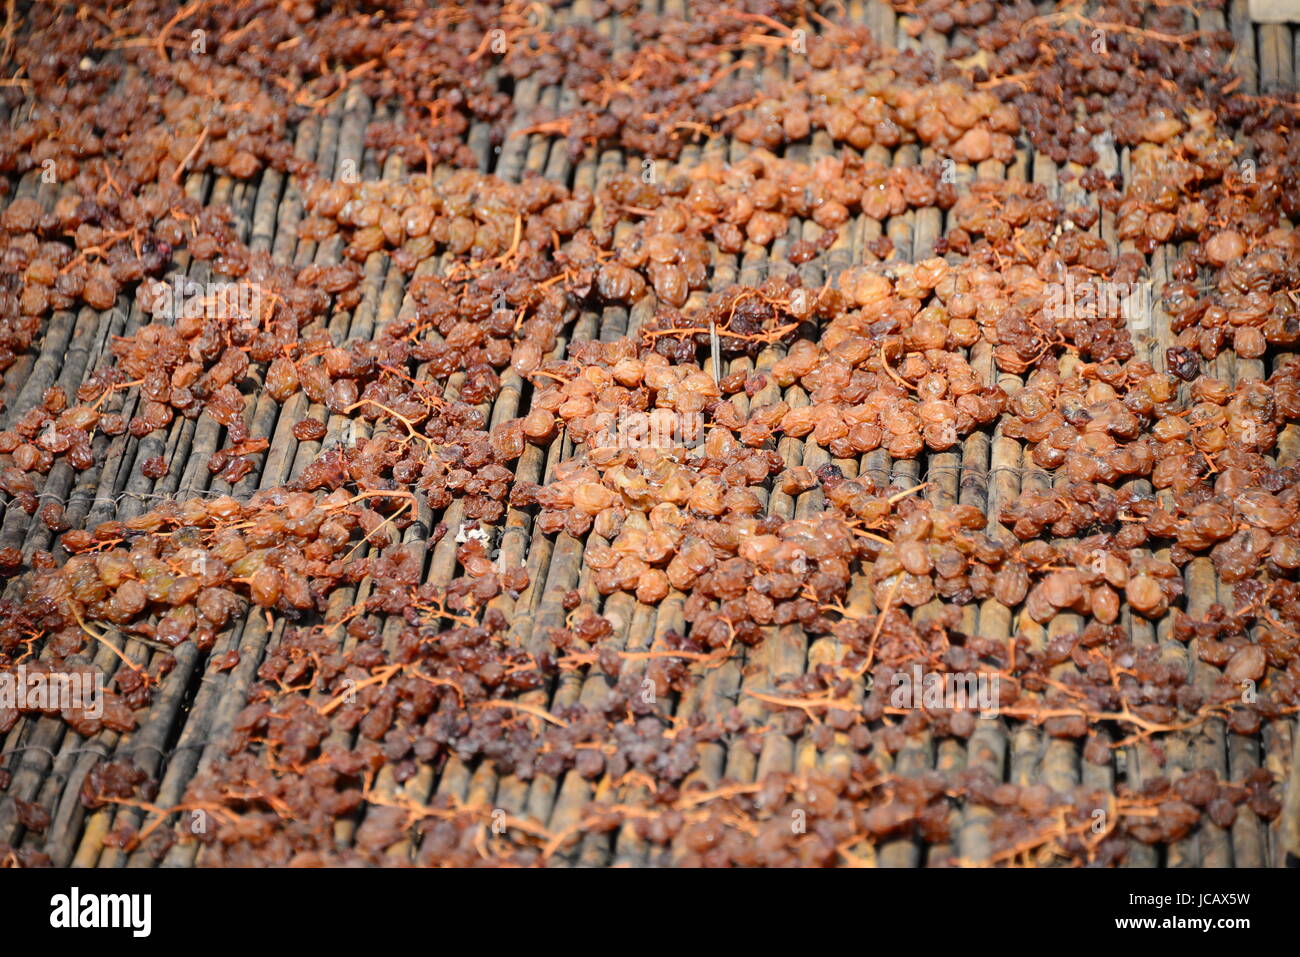 raisins - spain Stock Photo